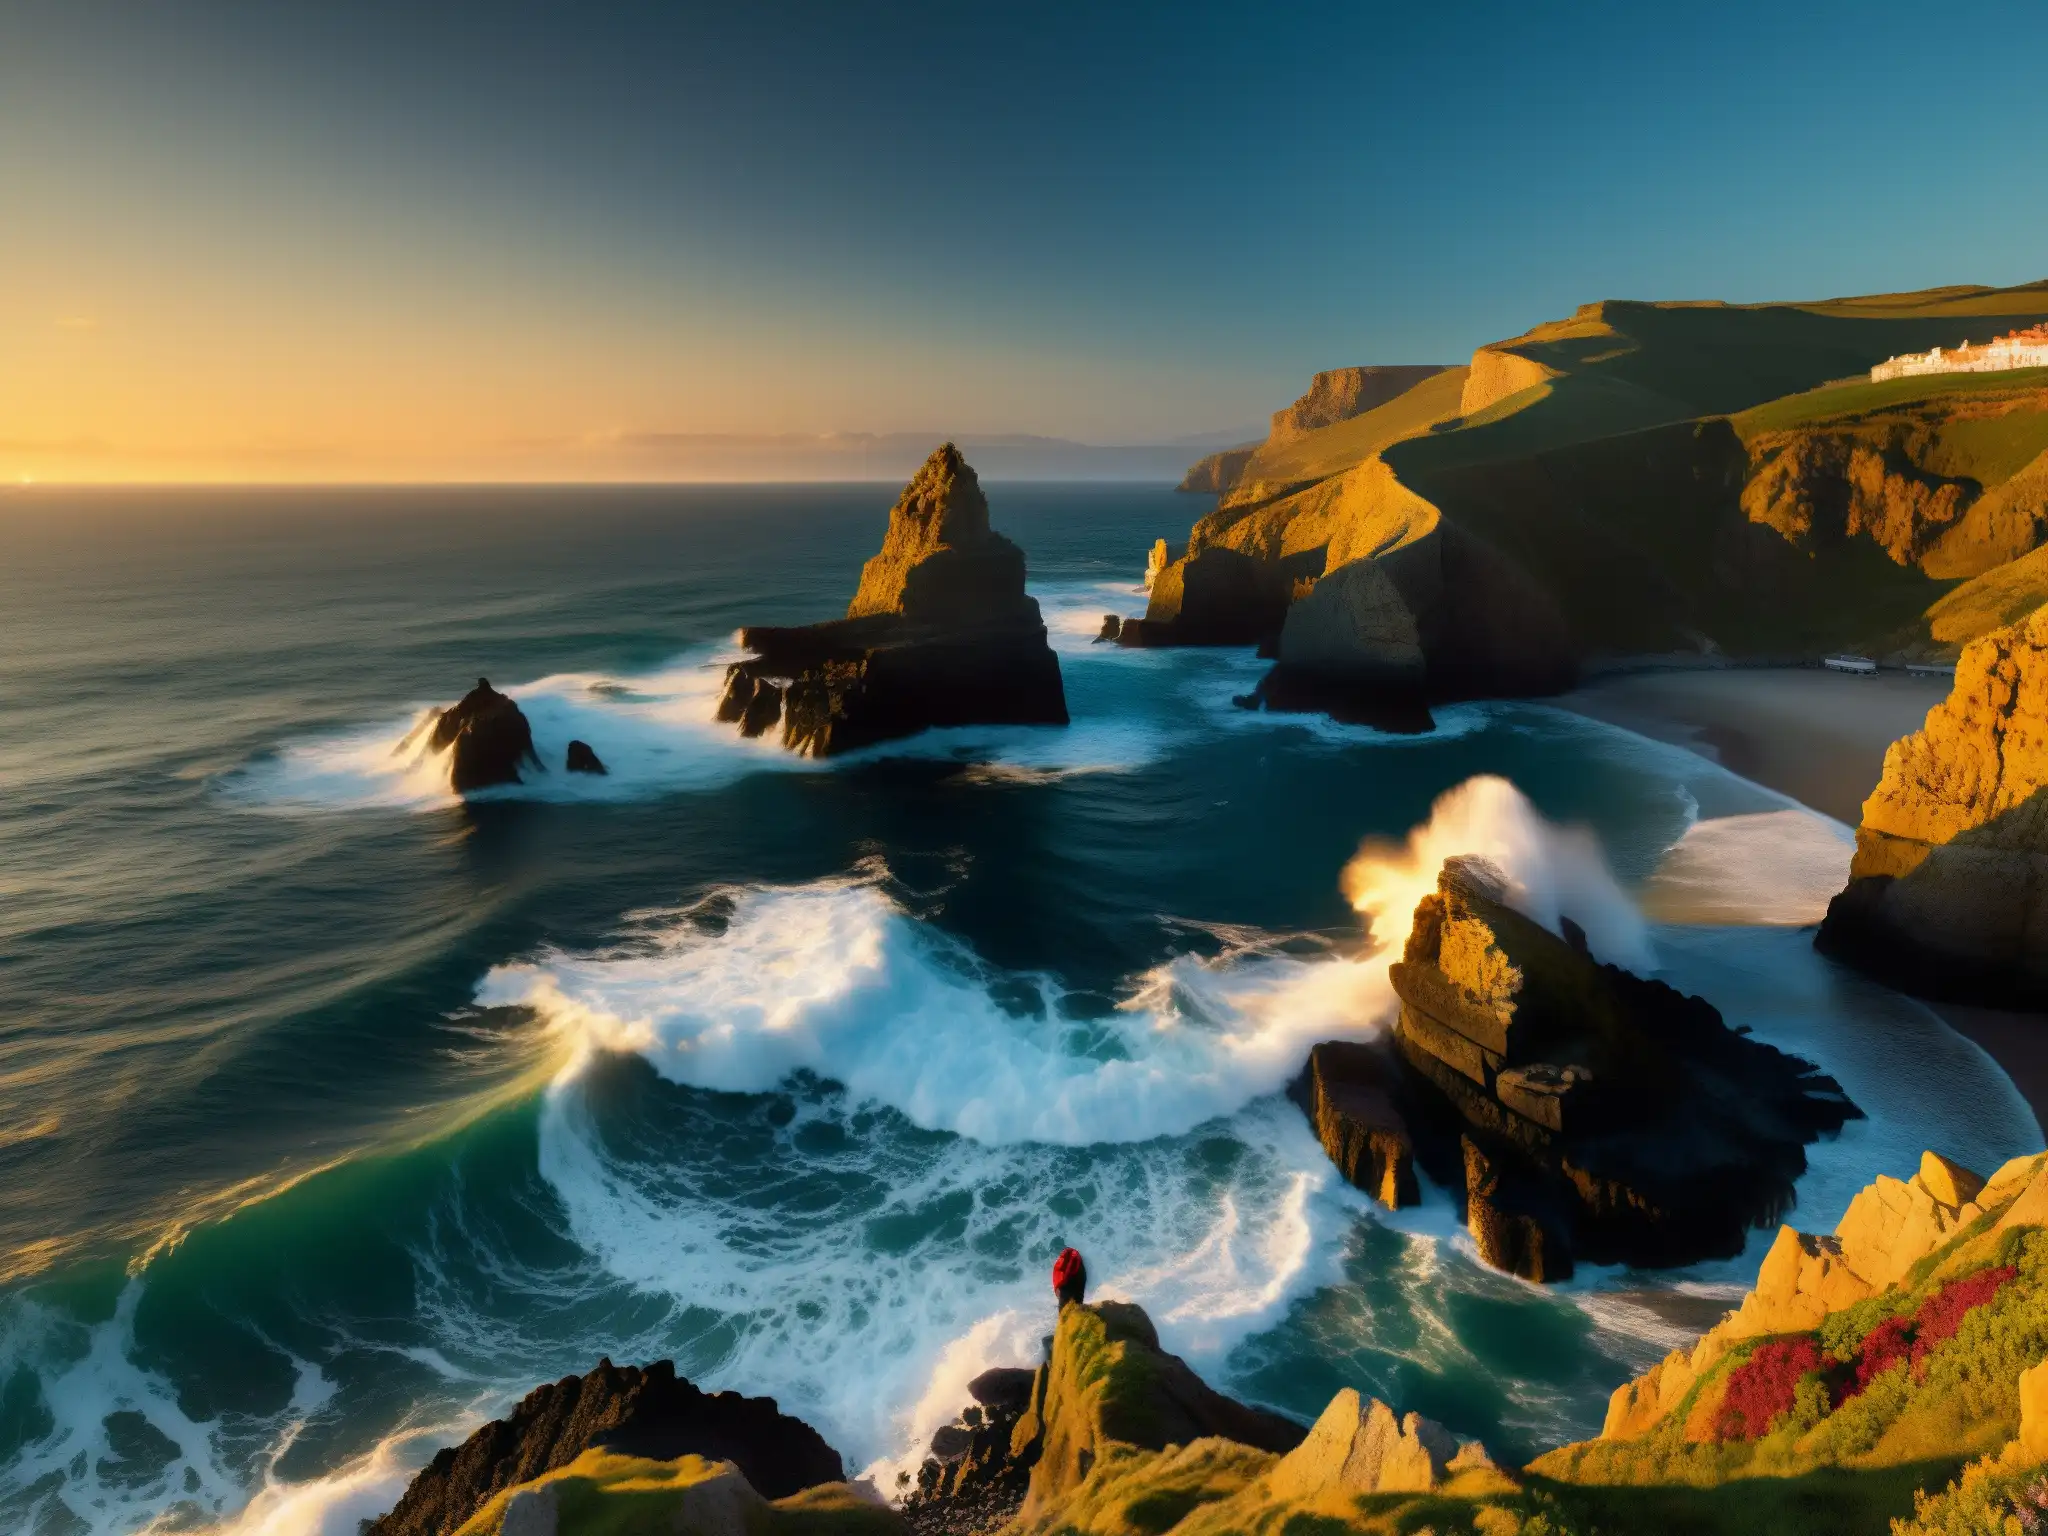 Cliffs y mar agitado en Liérganes, España, con silueta misteriosa emergiendo de las olas al atardecer, evocando el enigmático Hombre Pez